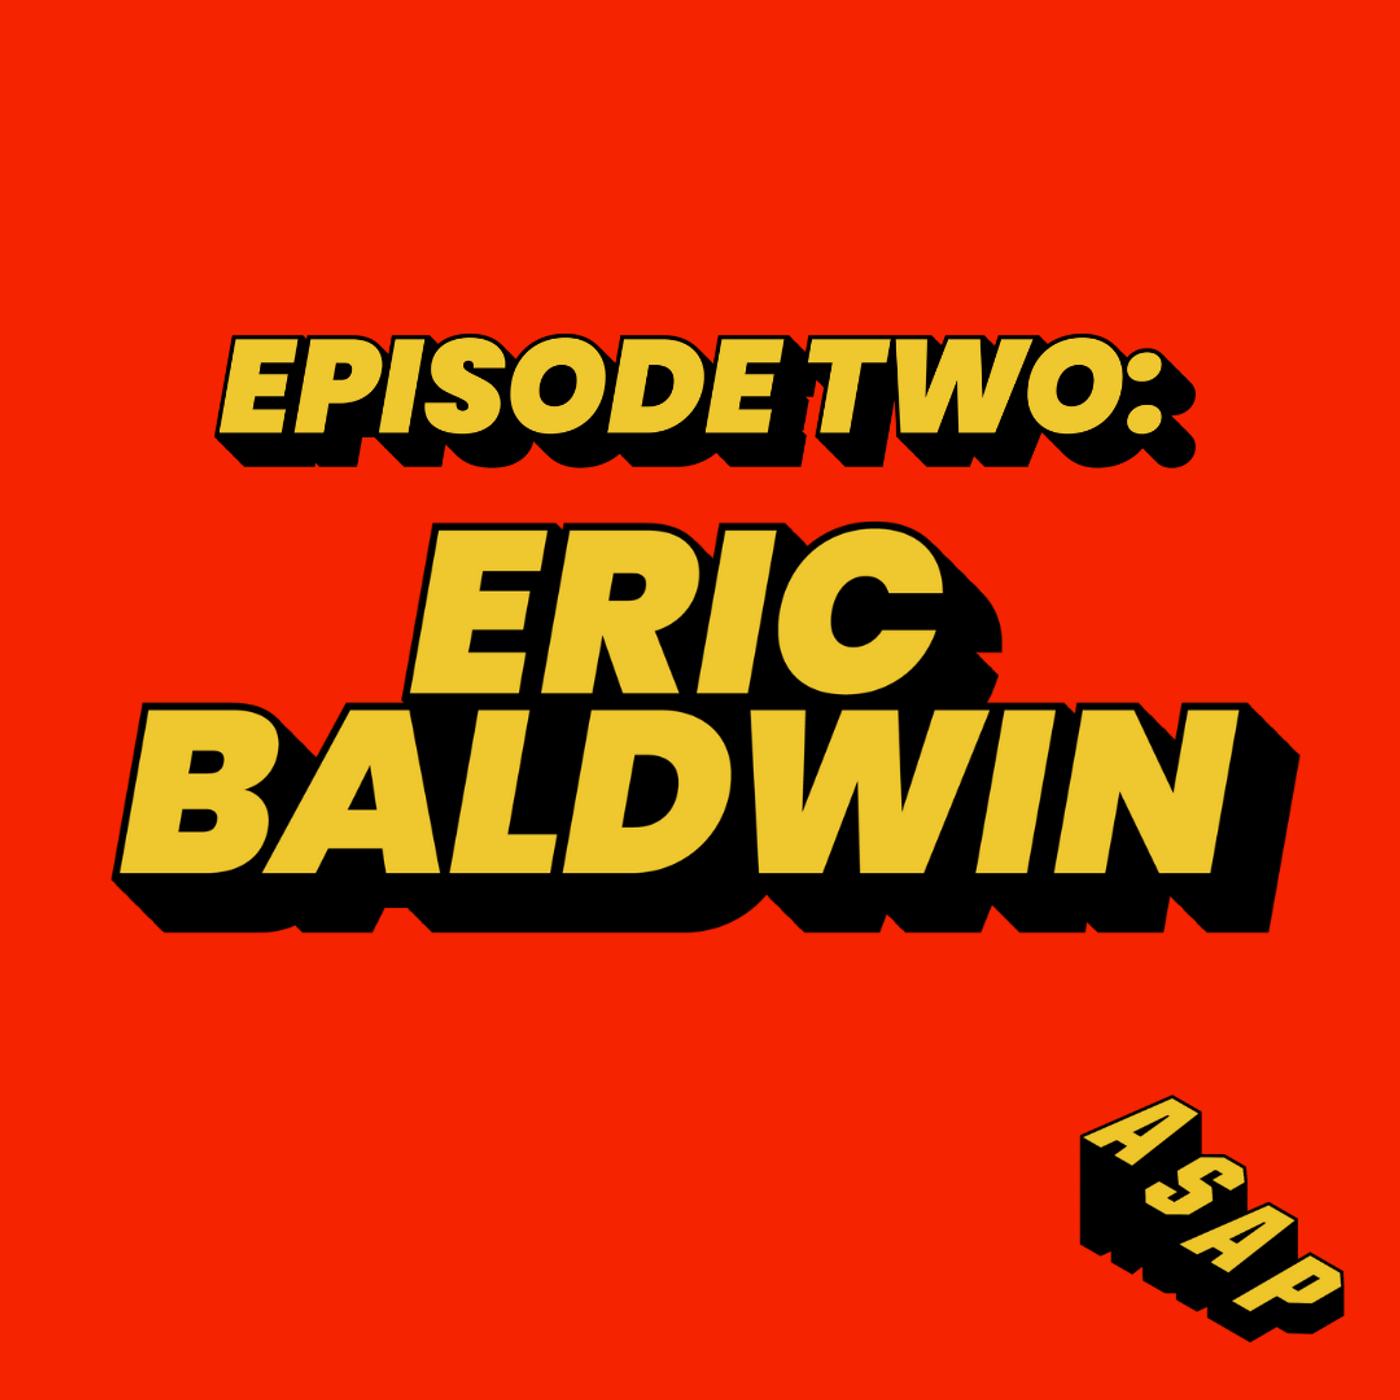 2: Eric Baldwin